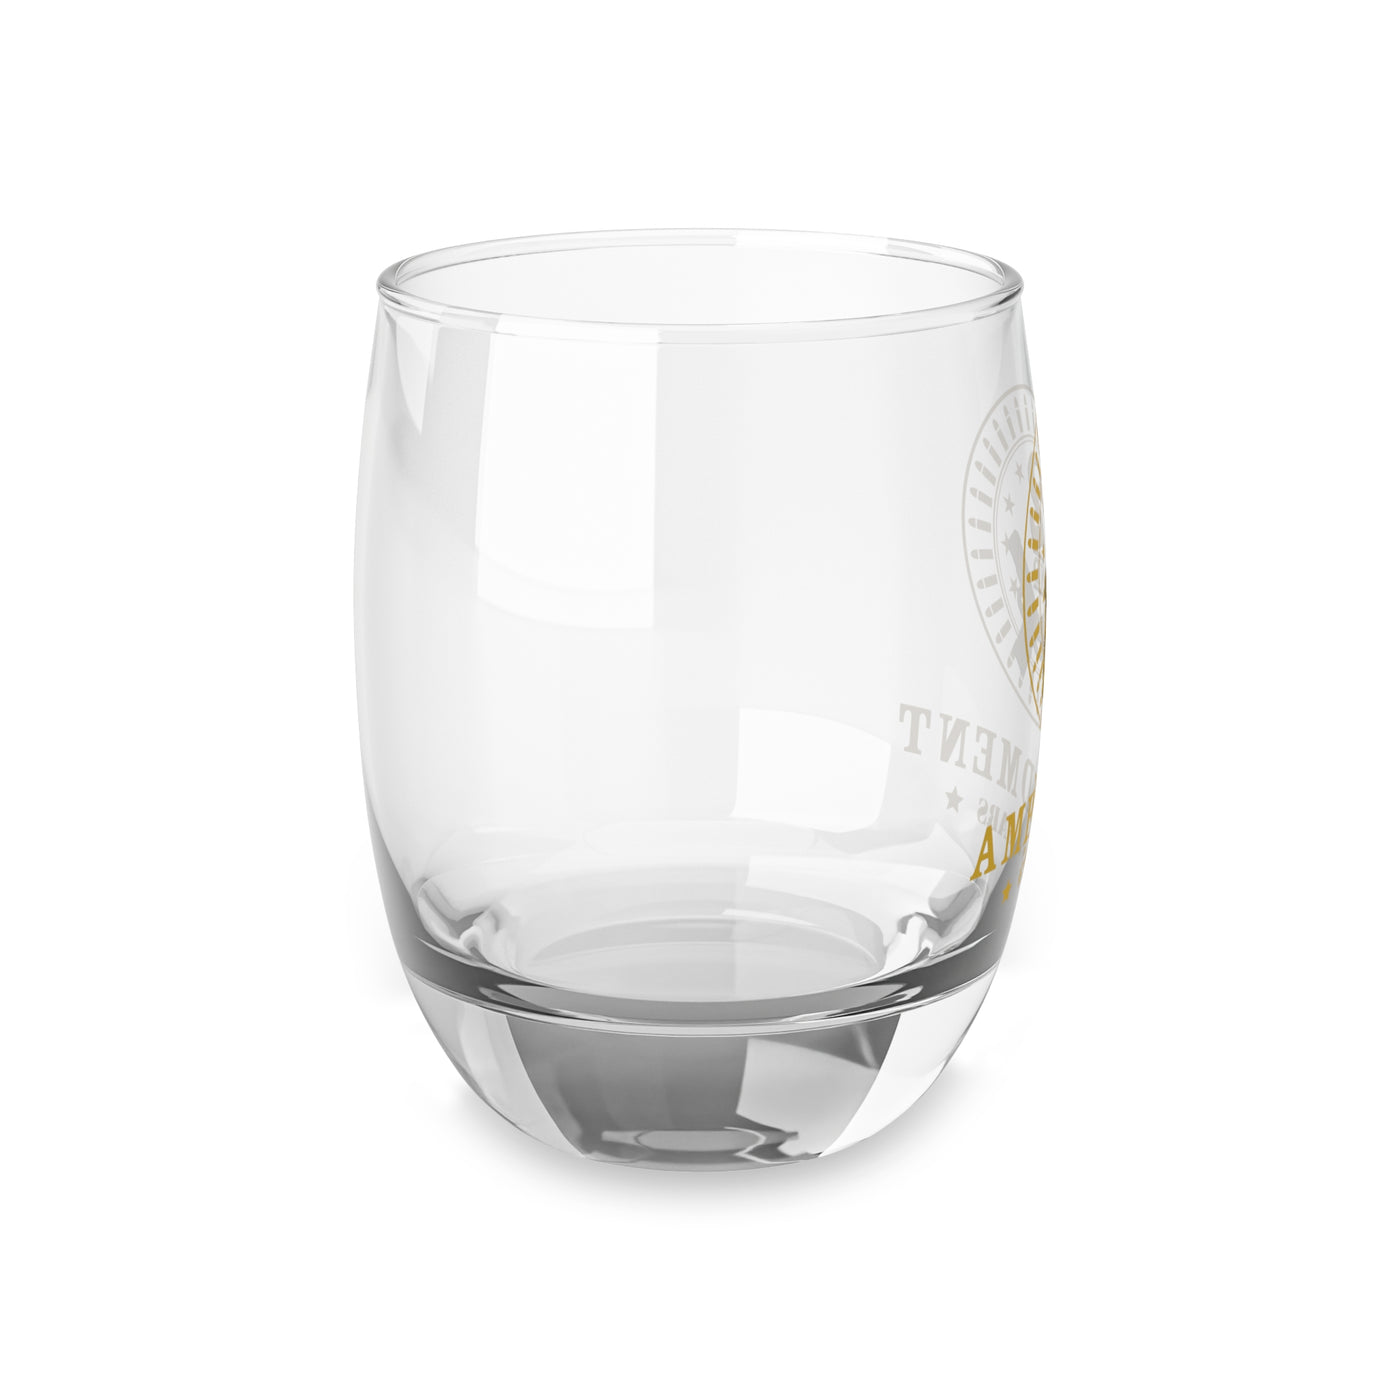 2nd Amendment - Whiskey Glass